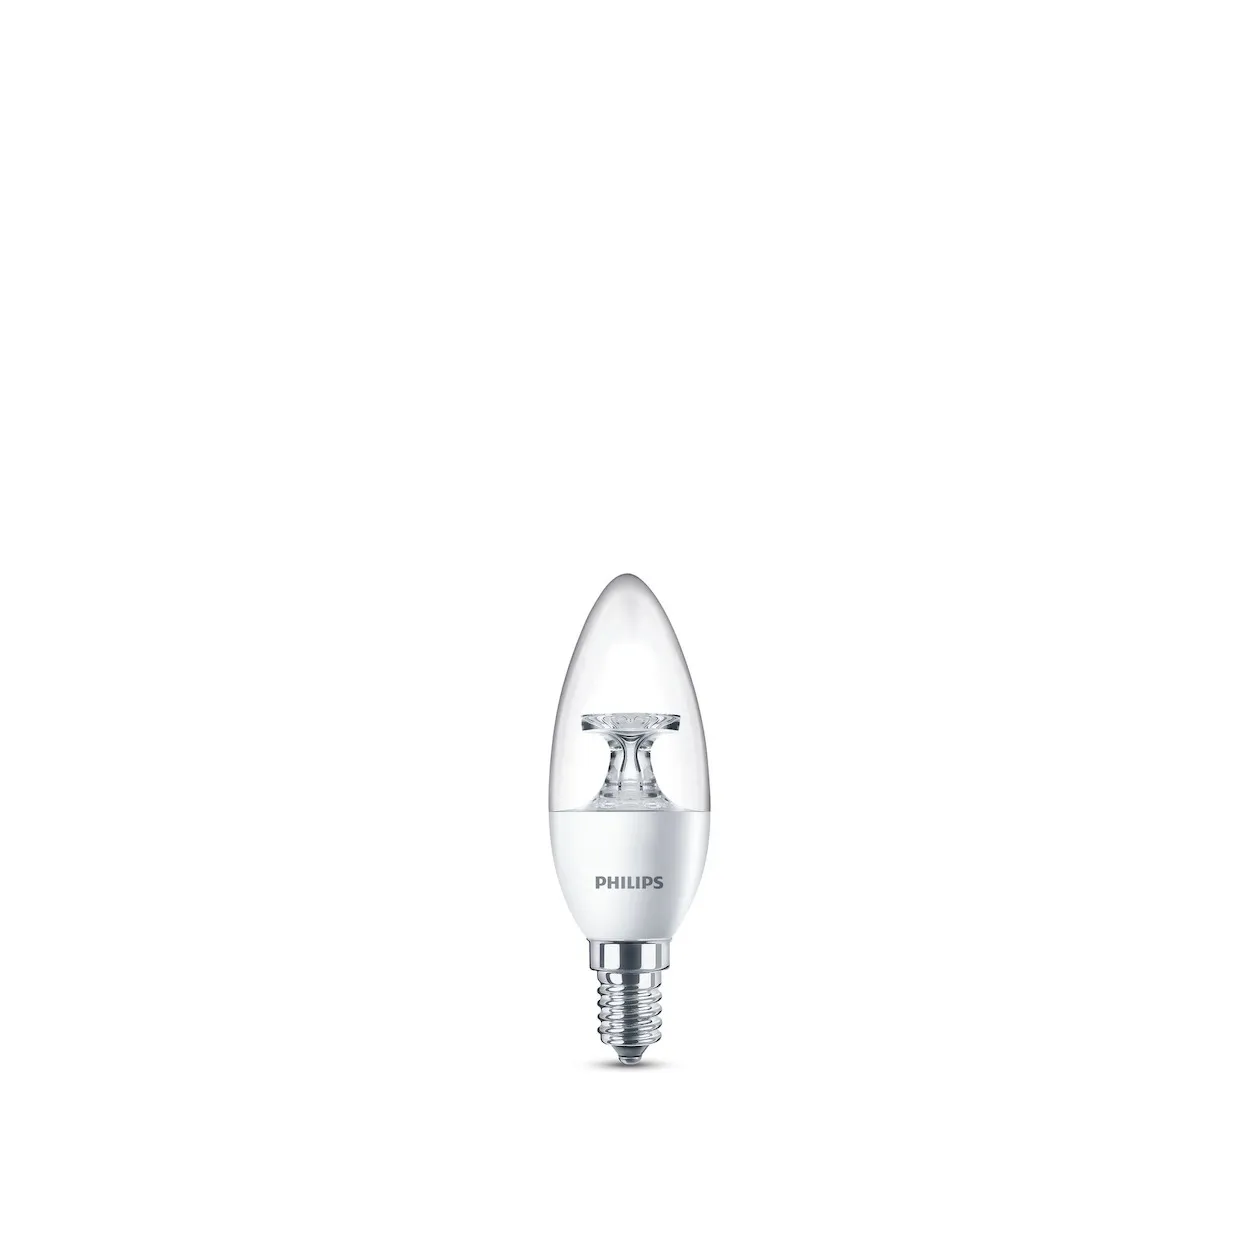 Philips LED lamp E14 5,5W 470Lm kaars helder